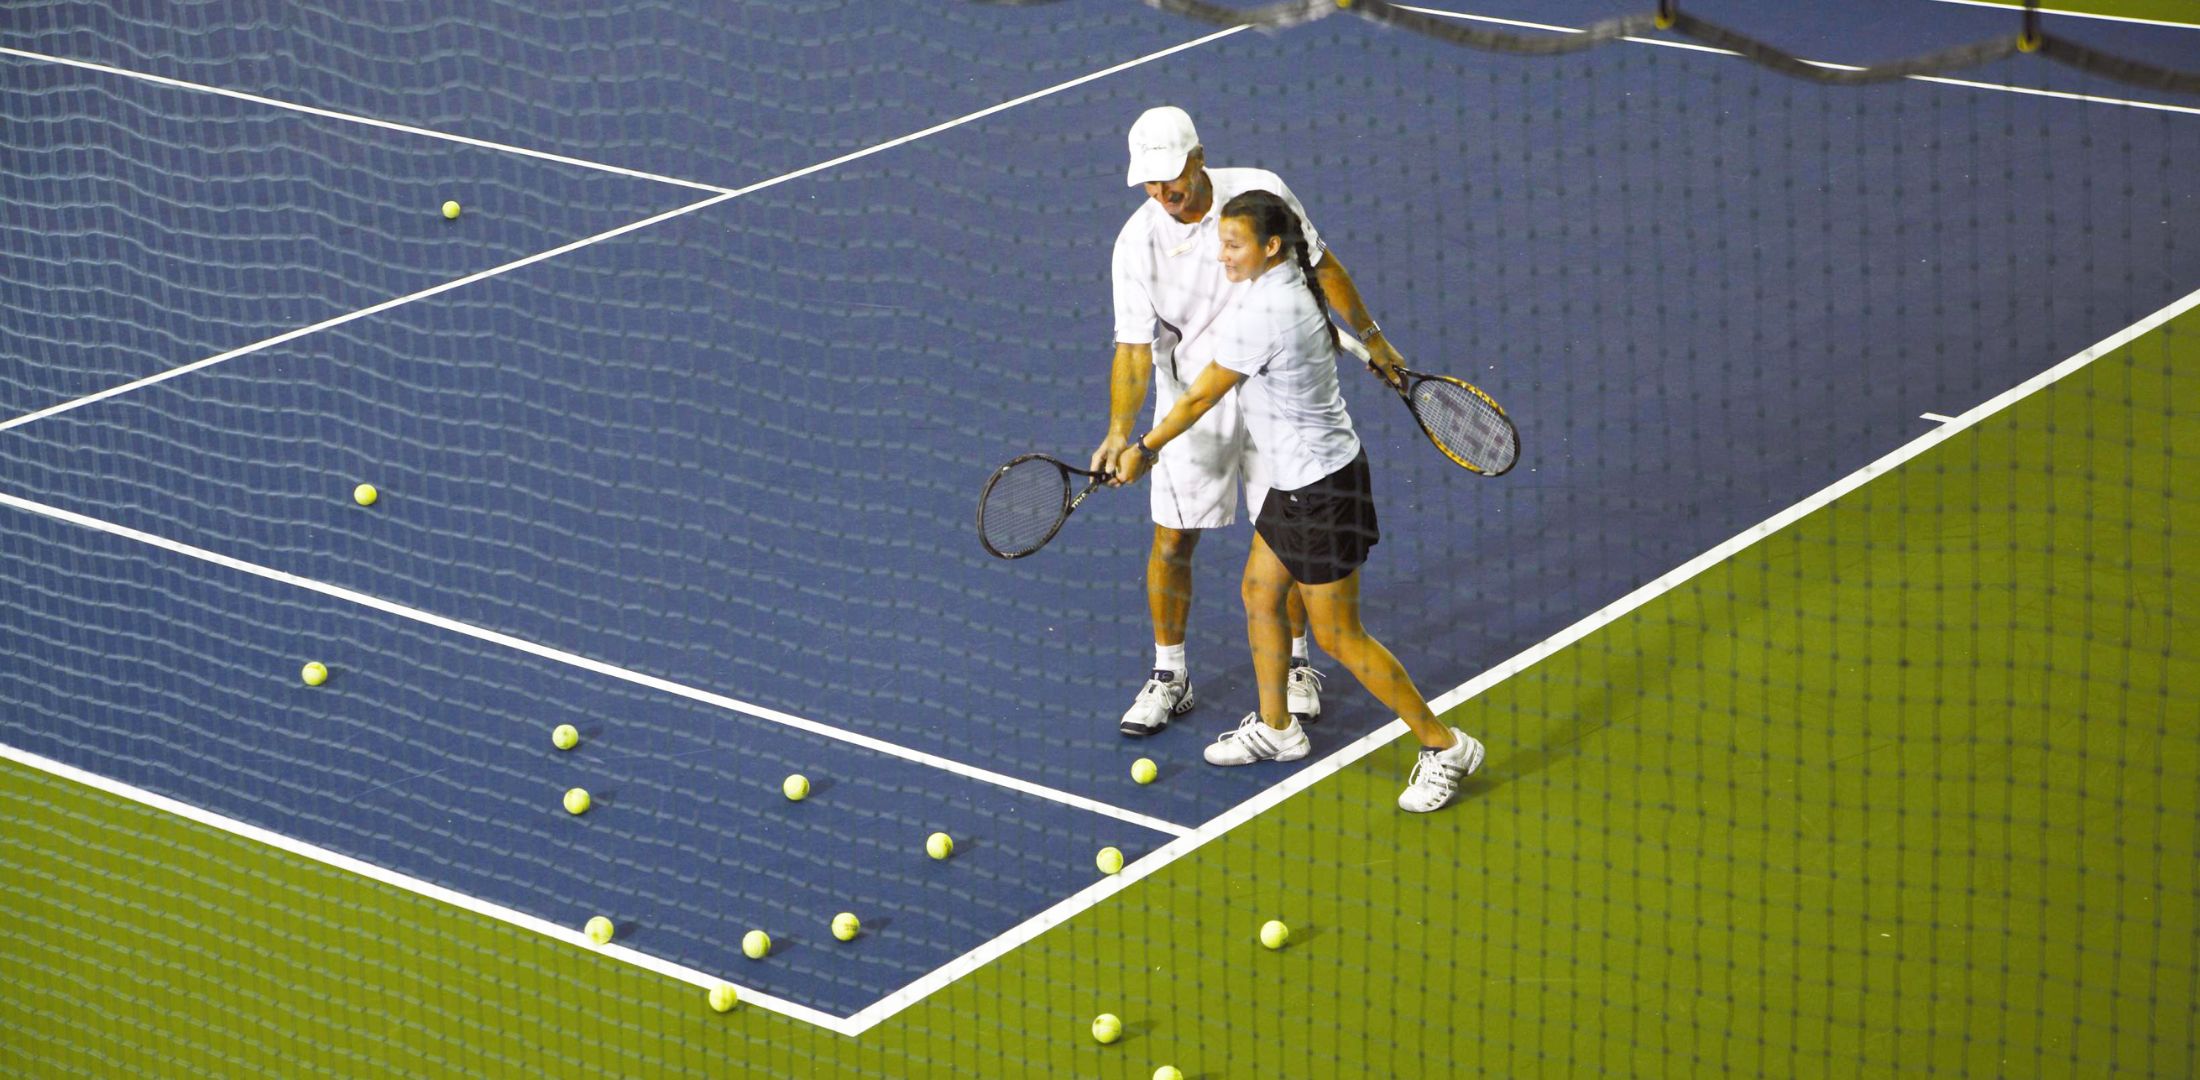 Indoor Tennis Clinic